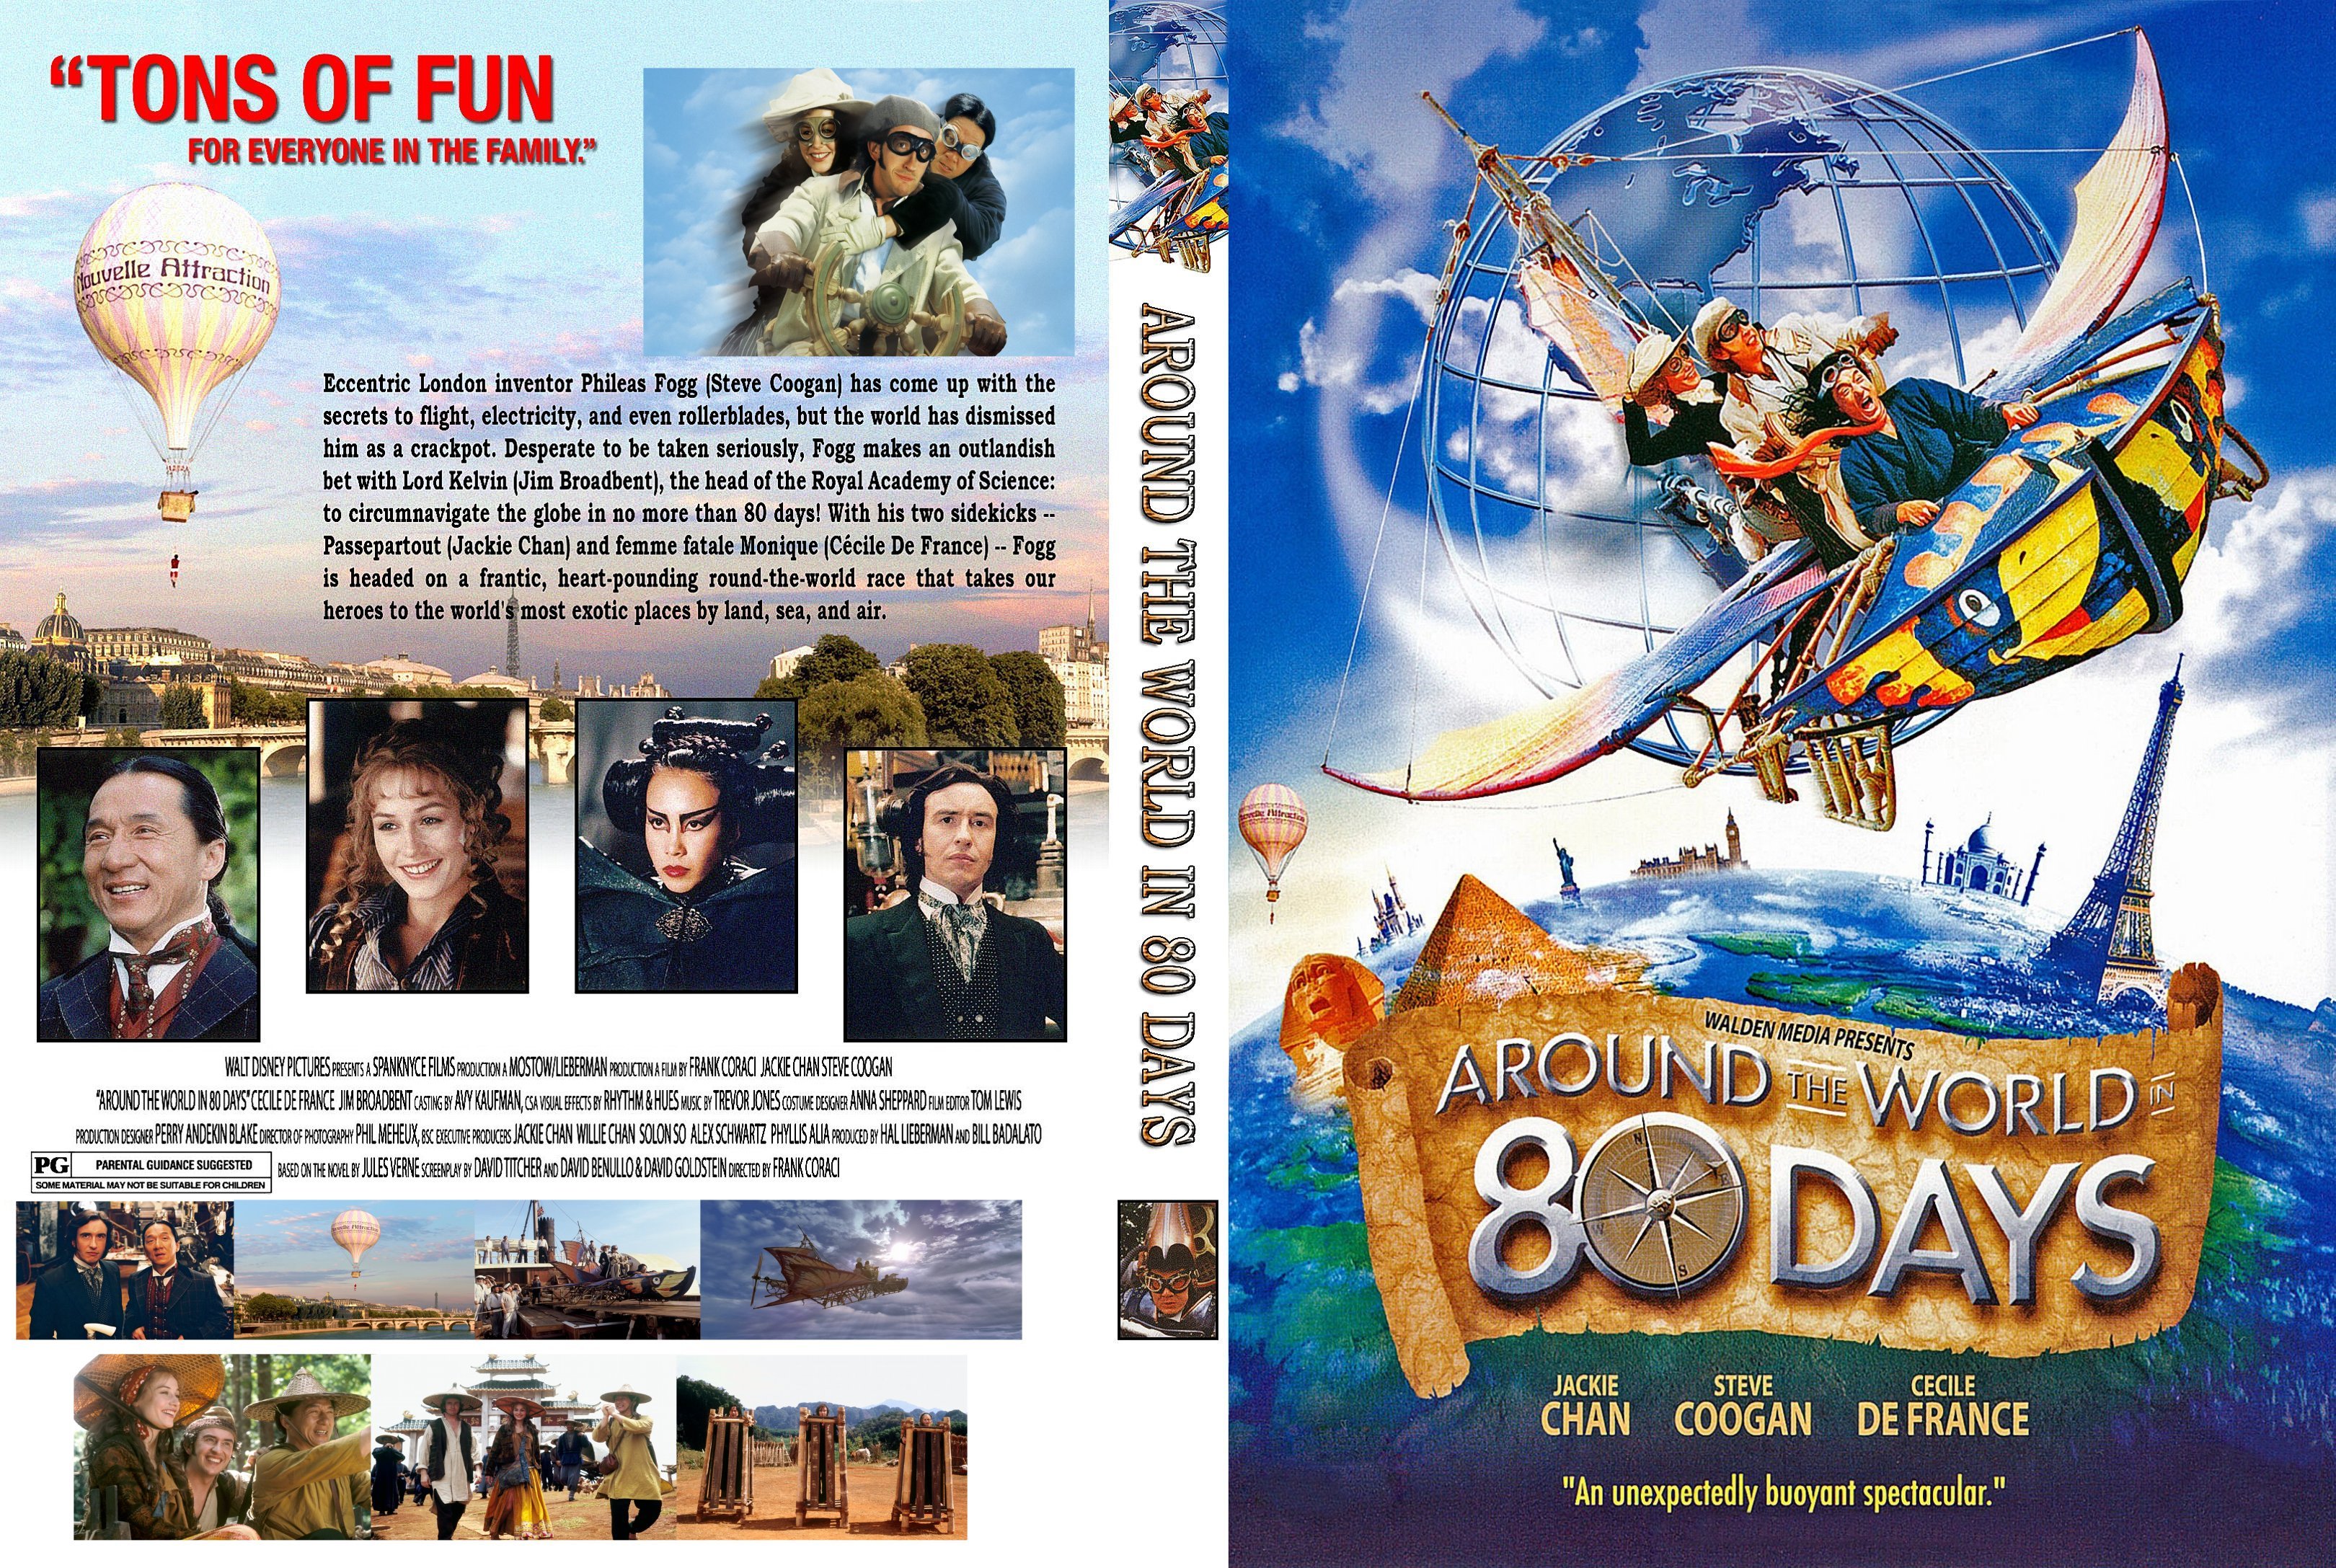 around the world in 80 days 2004 film